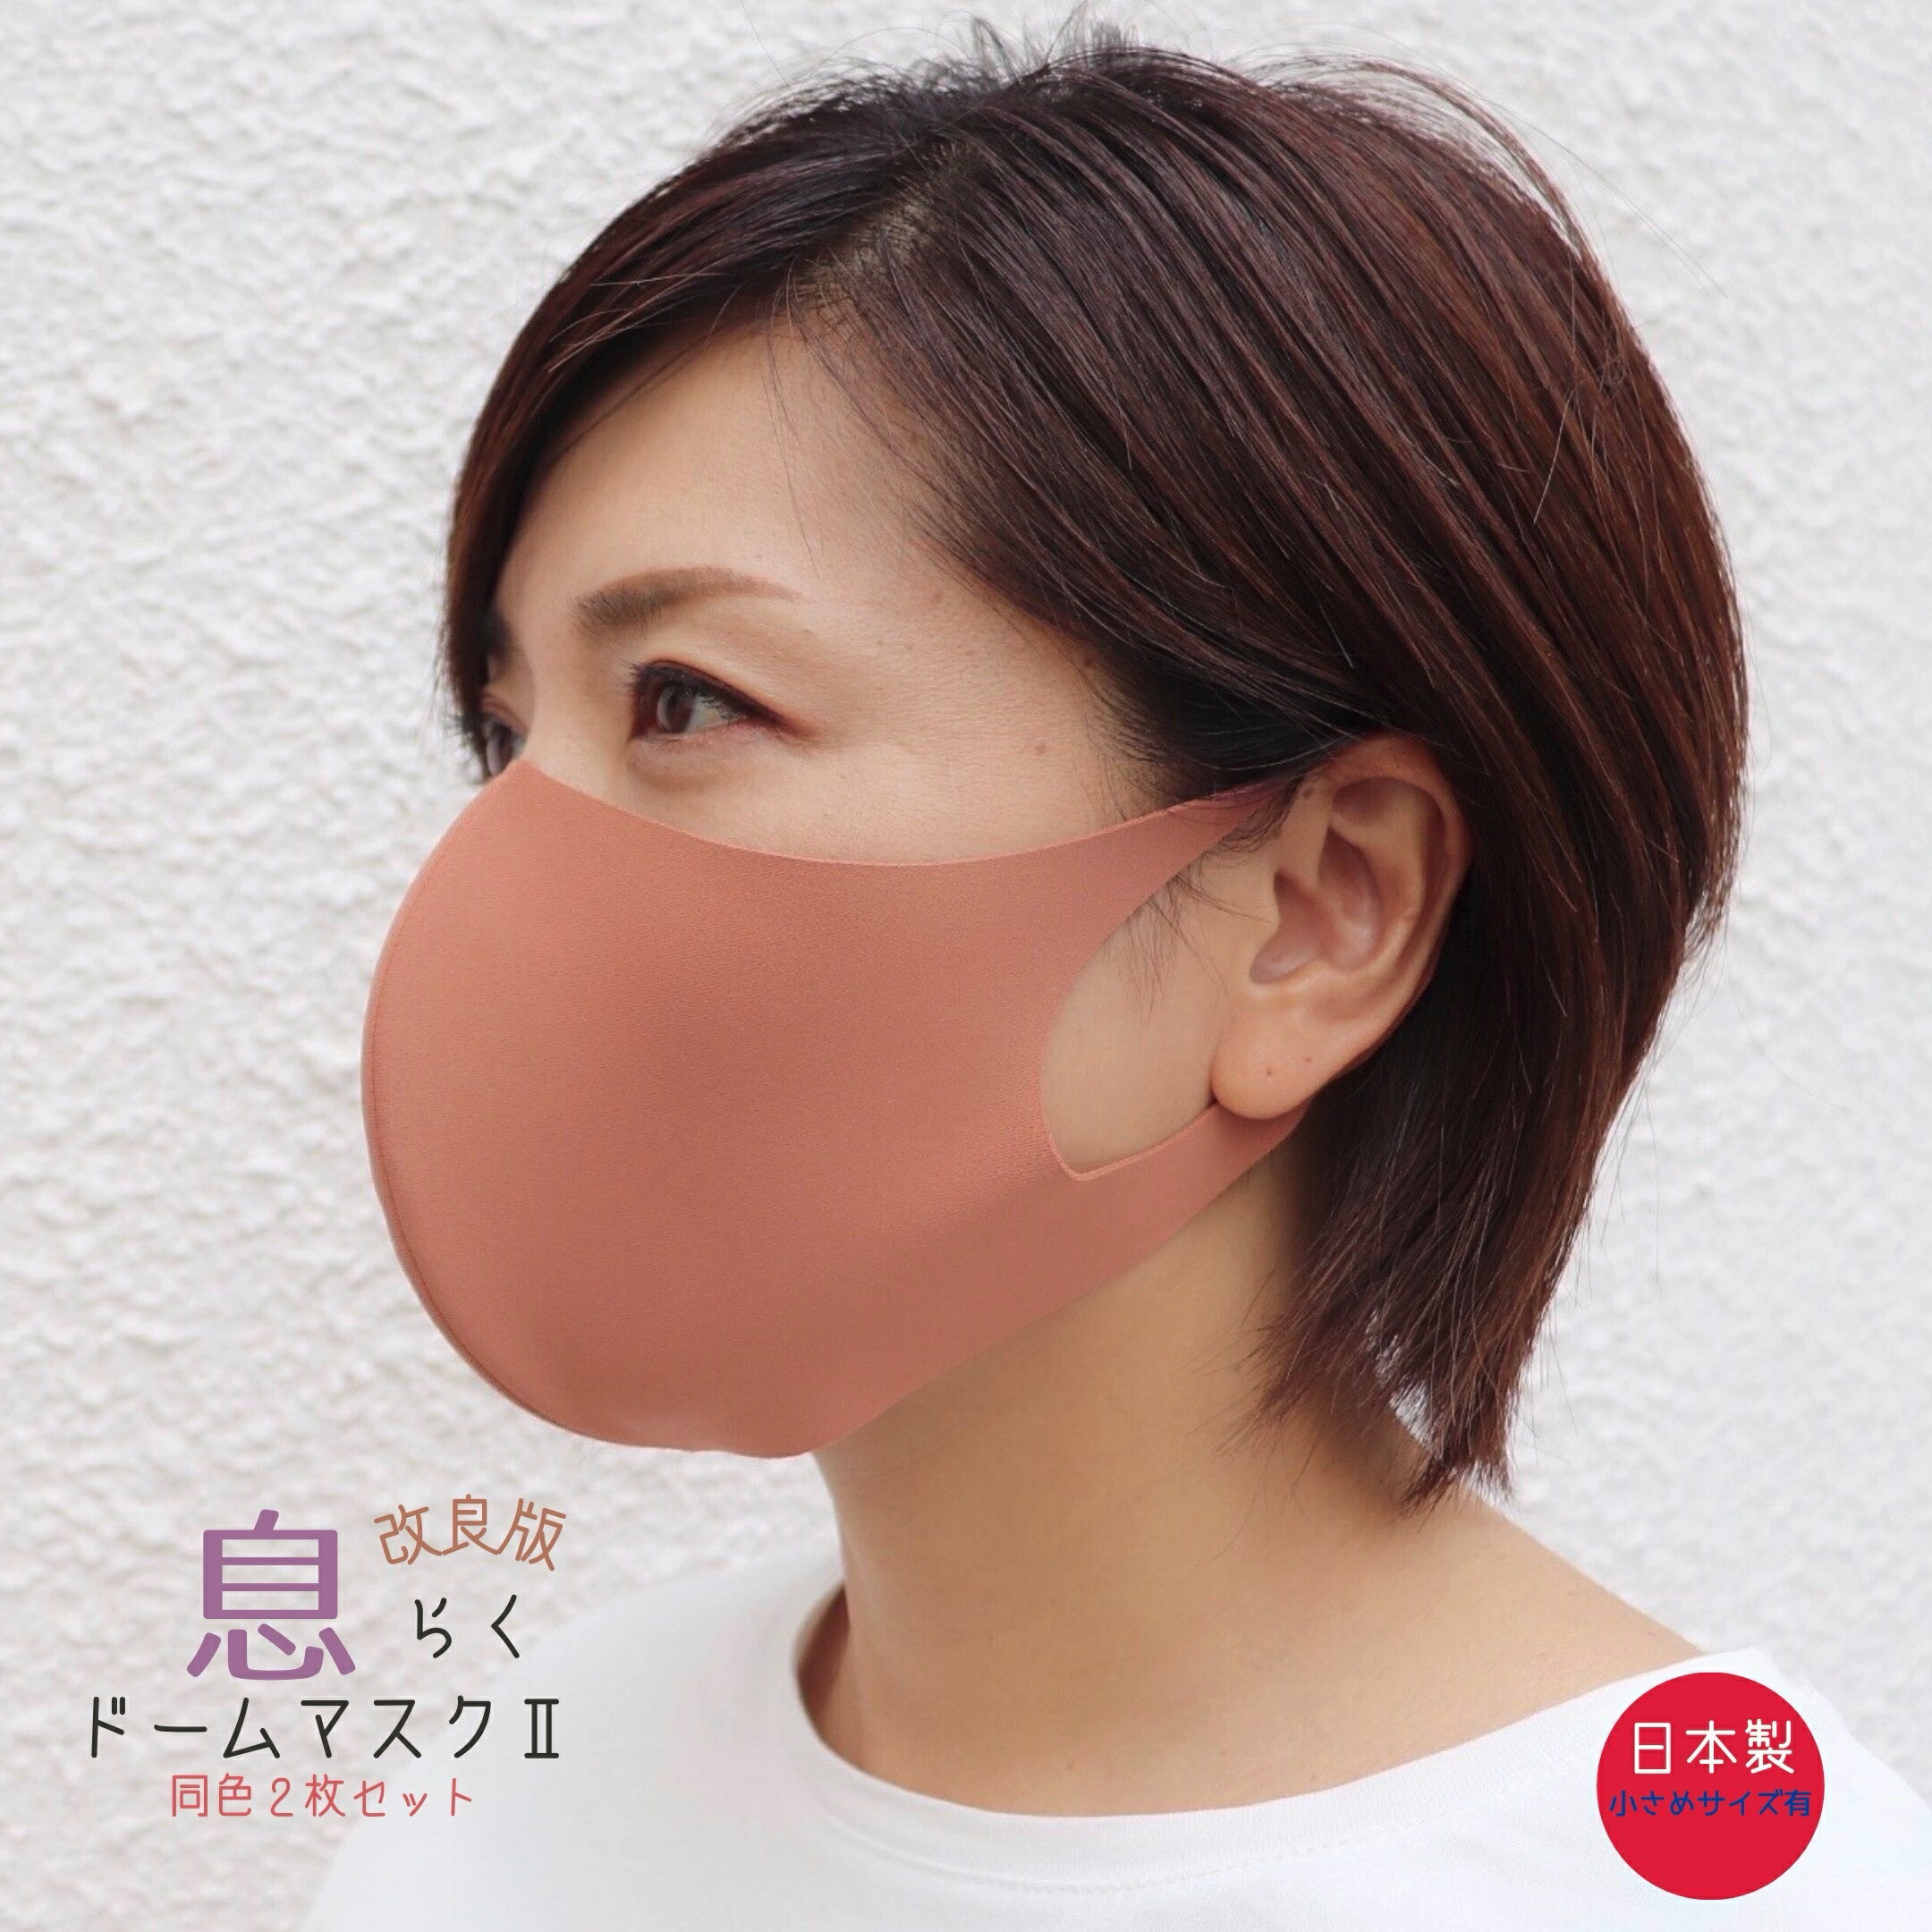 息らくドームマスク2 日本製 ワイヤー入り 小さいサイズあり 大人 息がしやすい 布マスク 立体 超快適 大人気商品 UV…